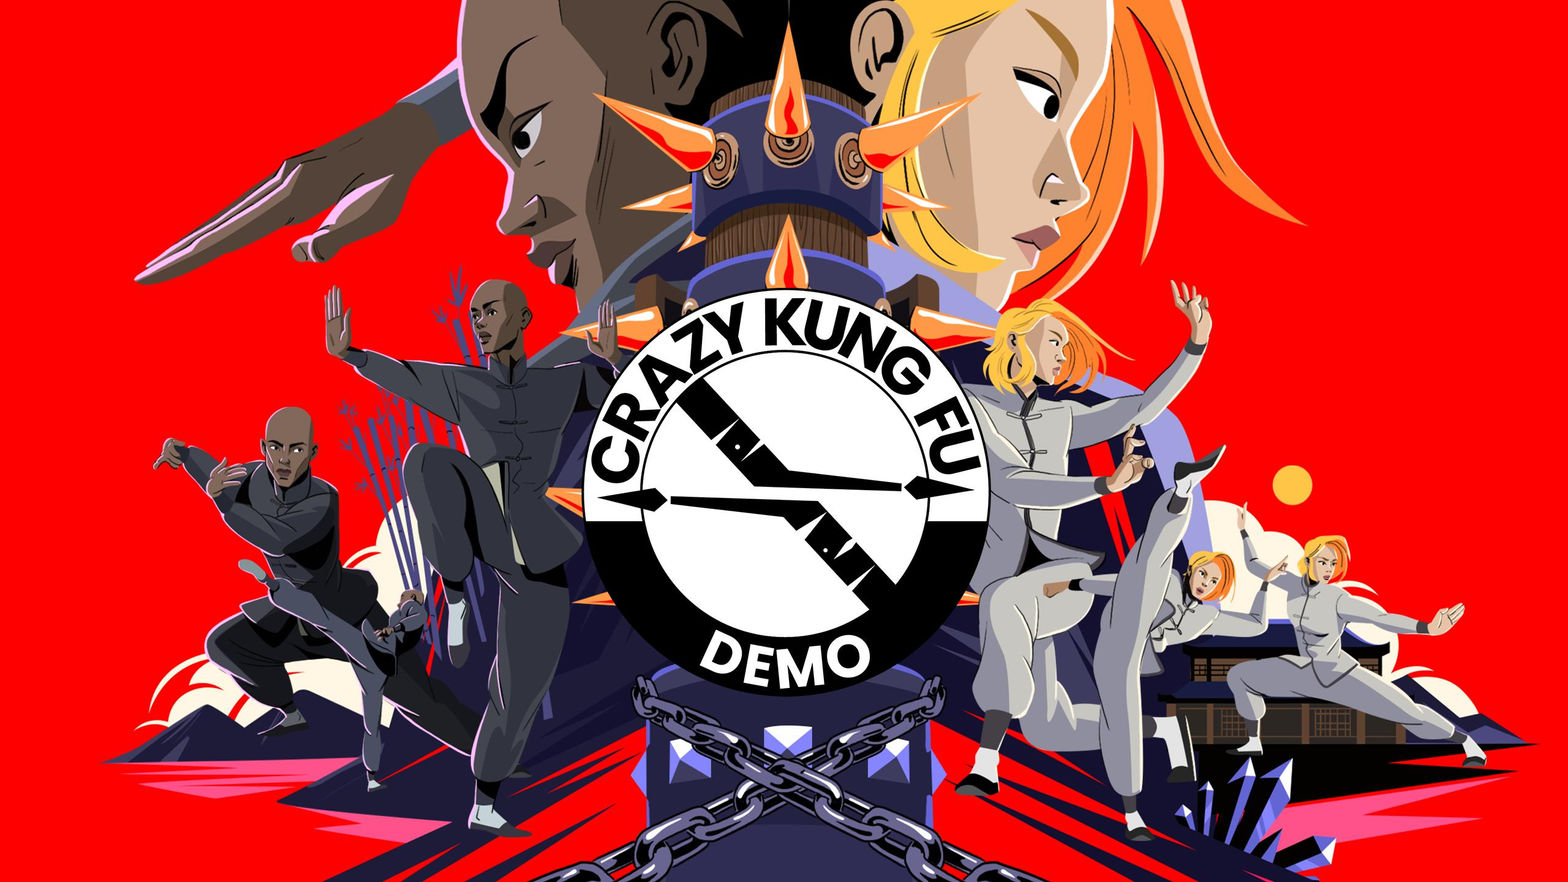 Crazy Kung Fu Demo